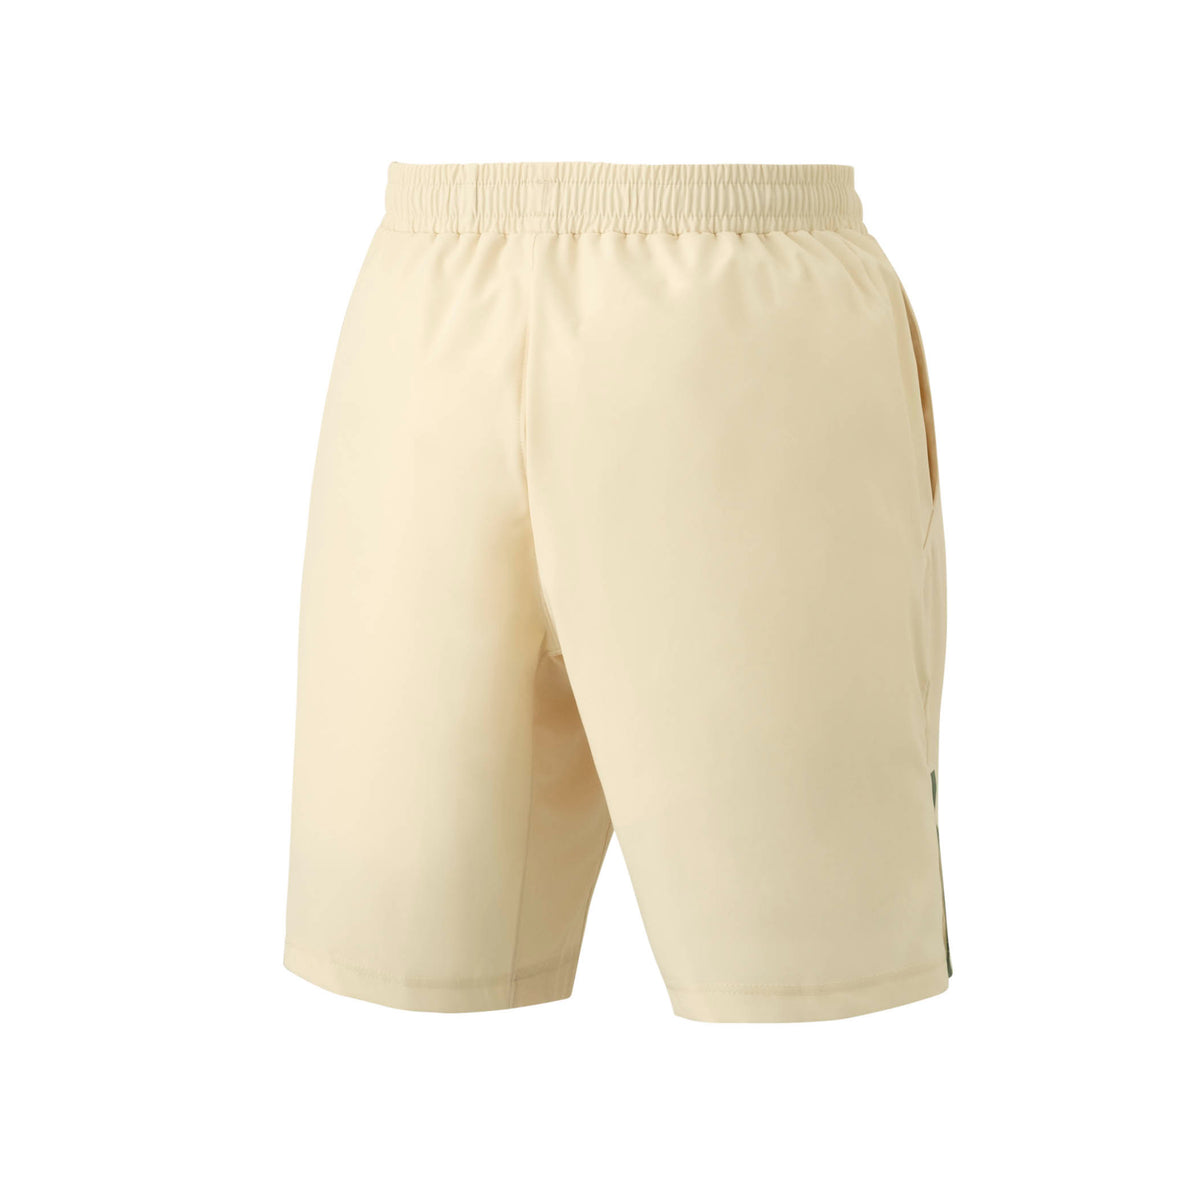 Yonex 15163 Shorts Mens (Sand)